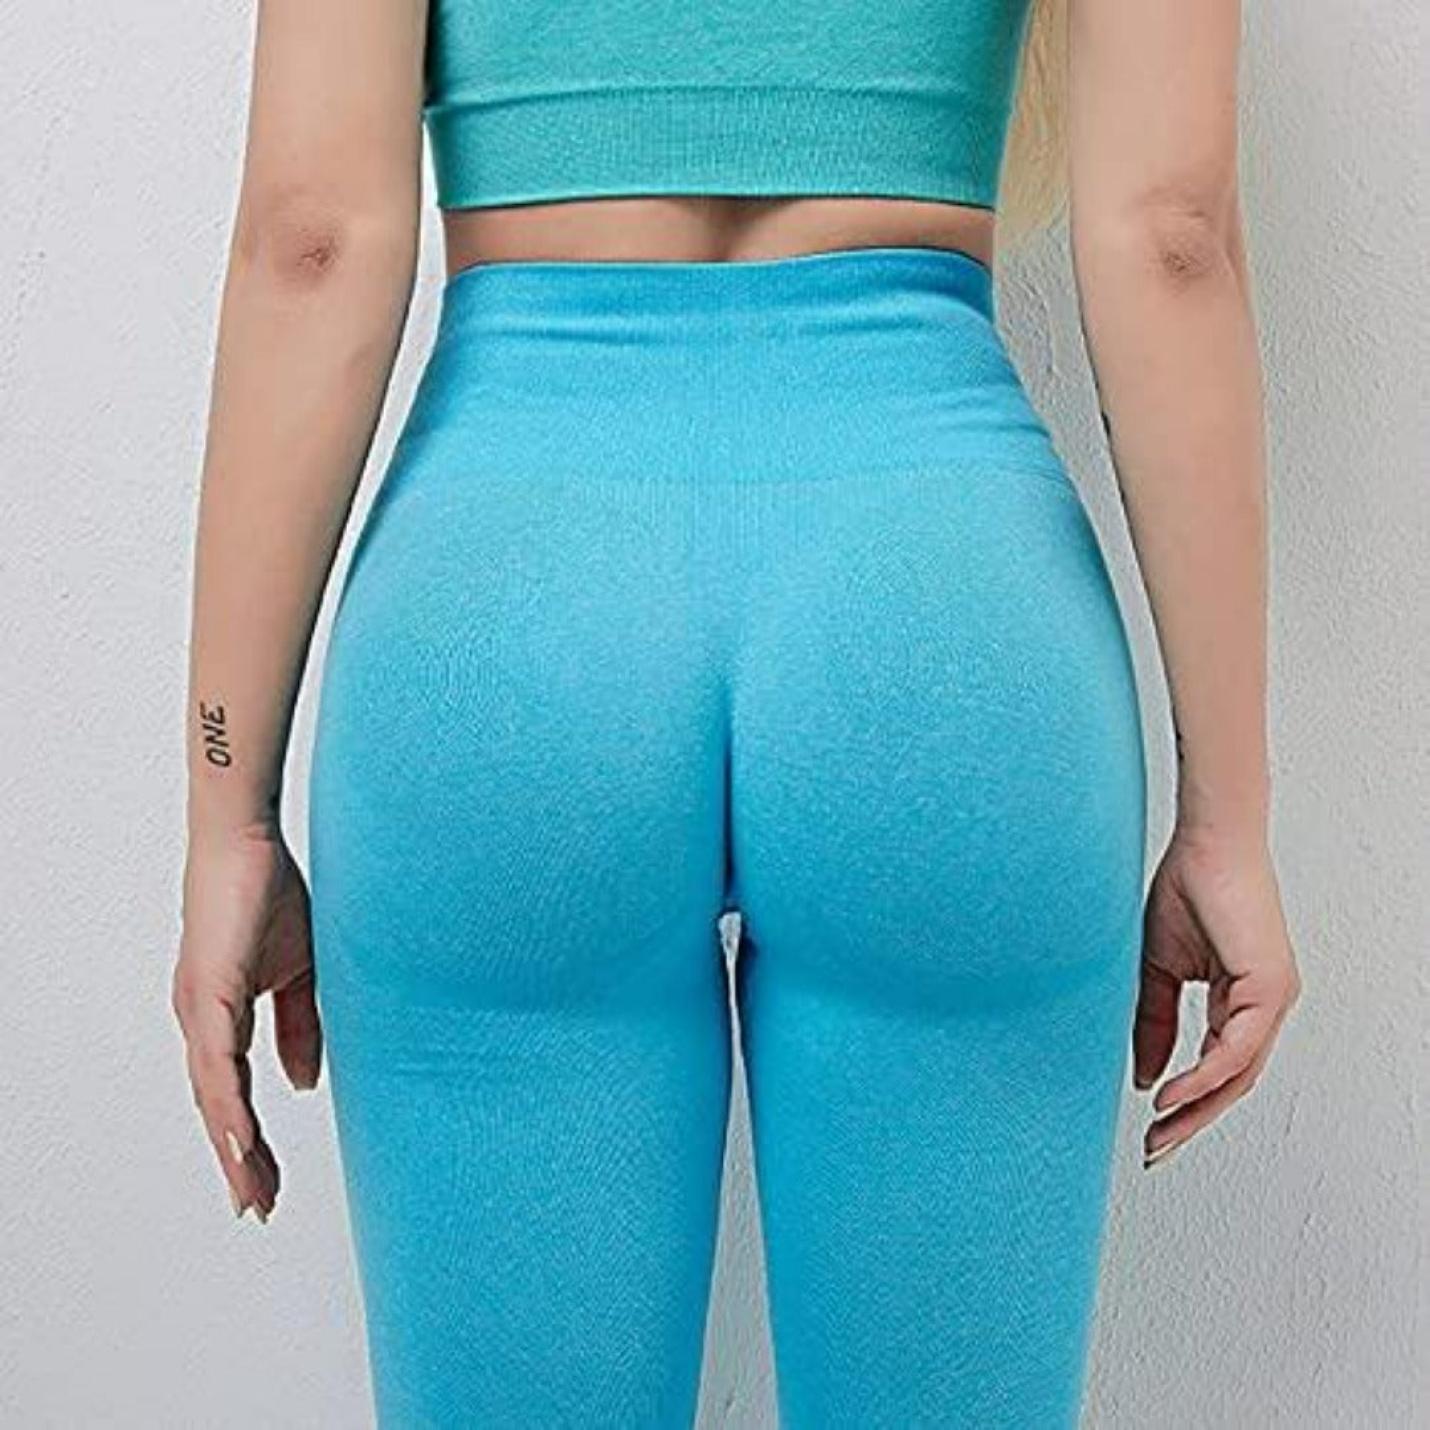 Yoga broek voor dames met booty lifting en push-up effect voor een perfecte pasvorm